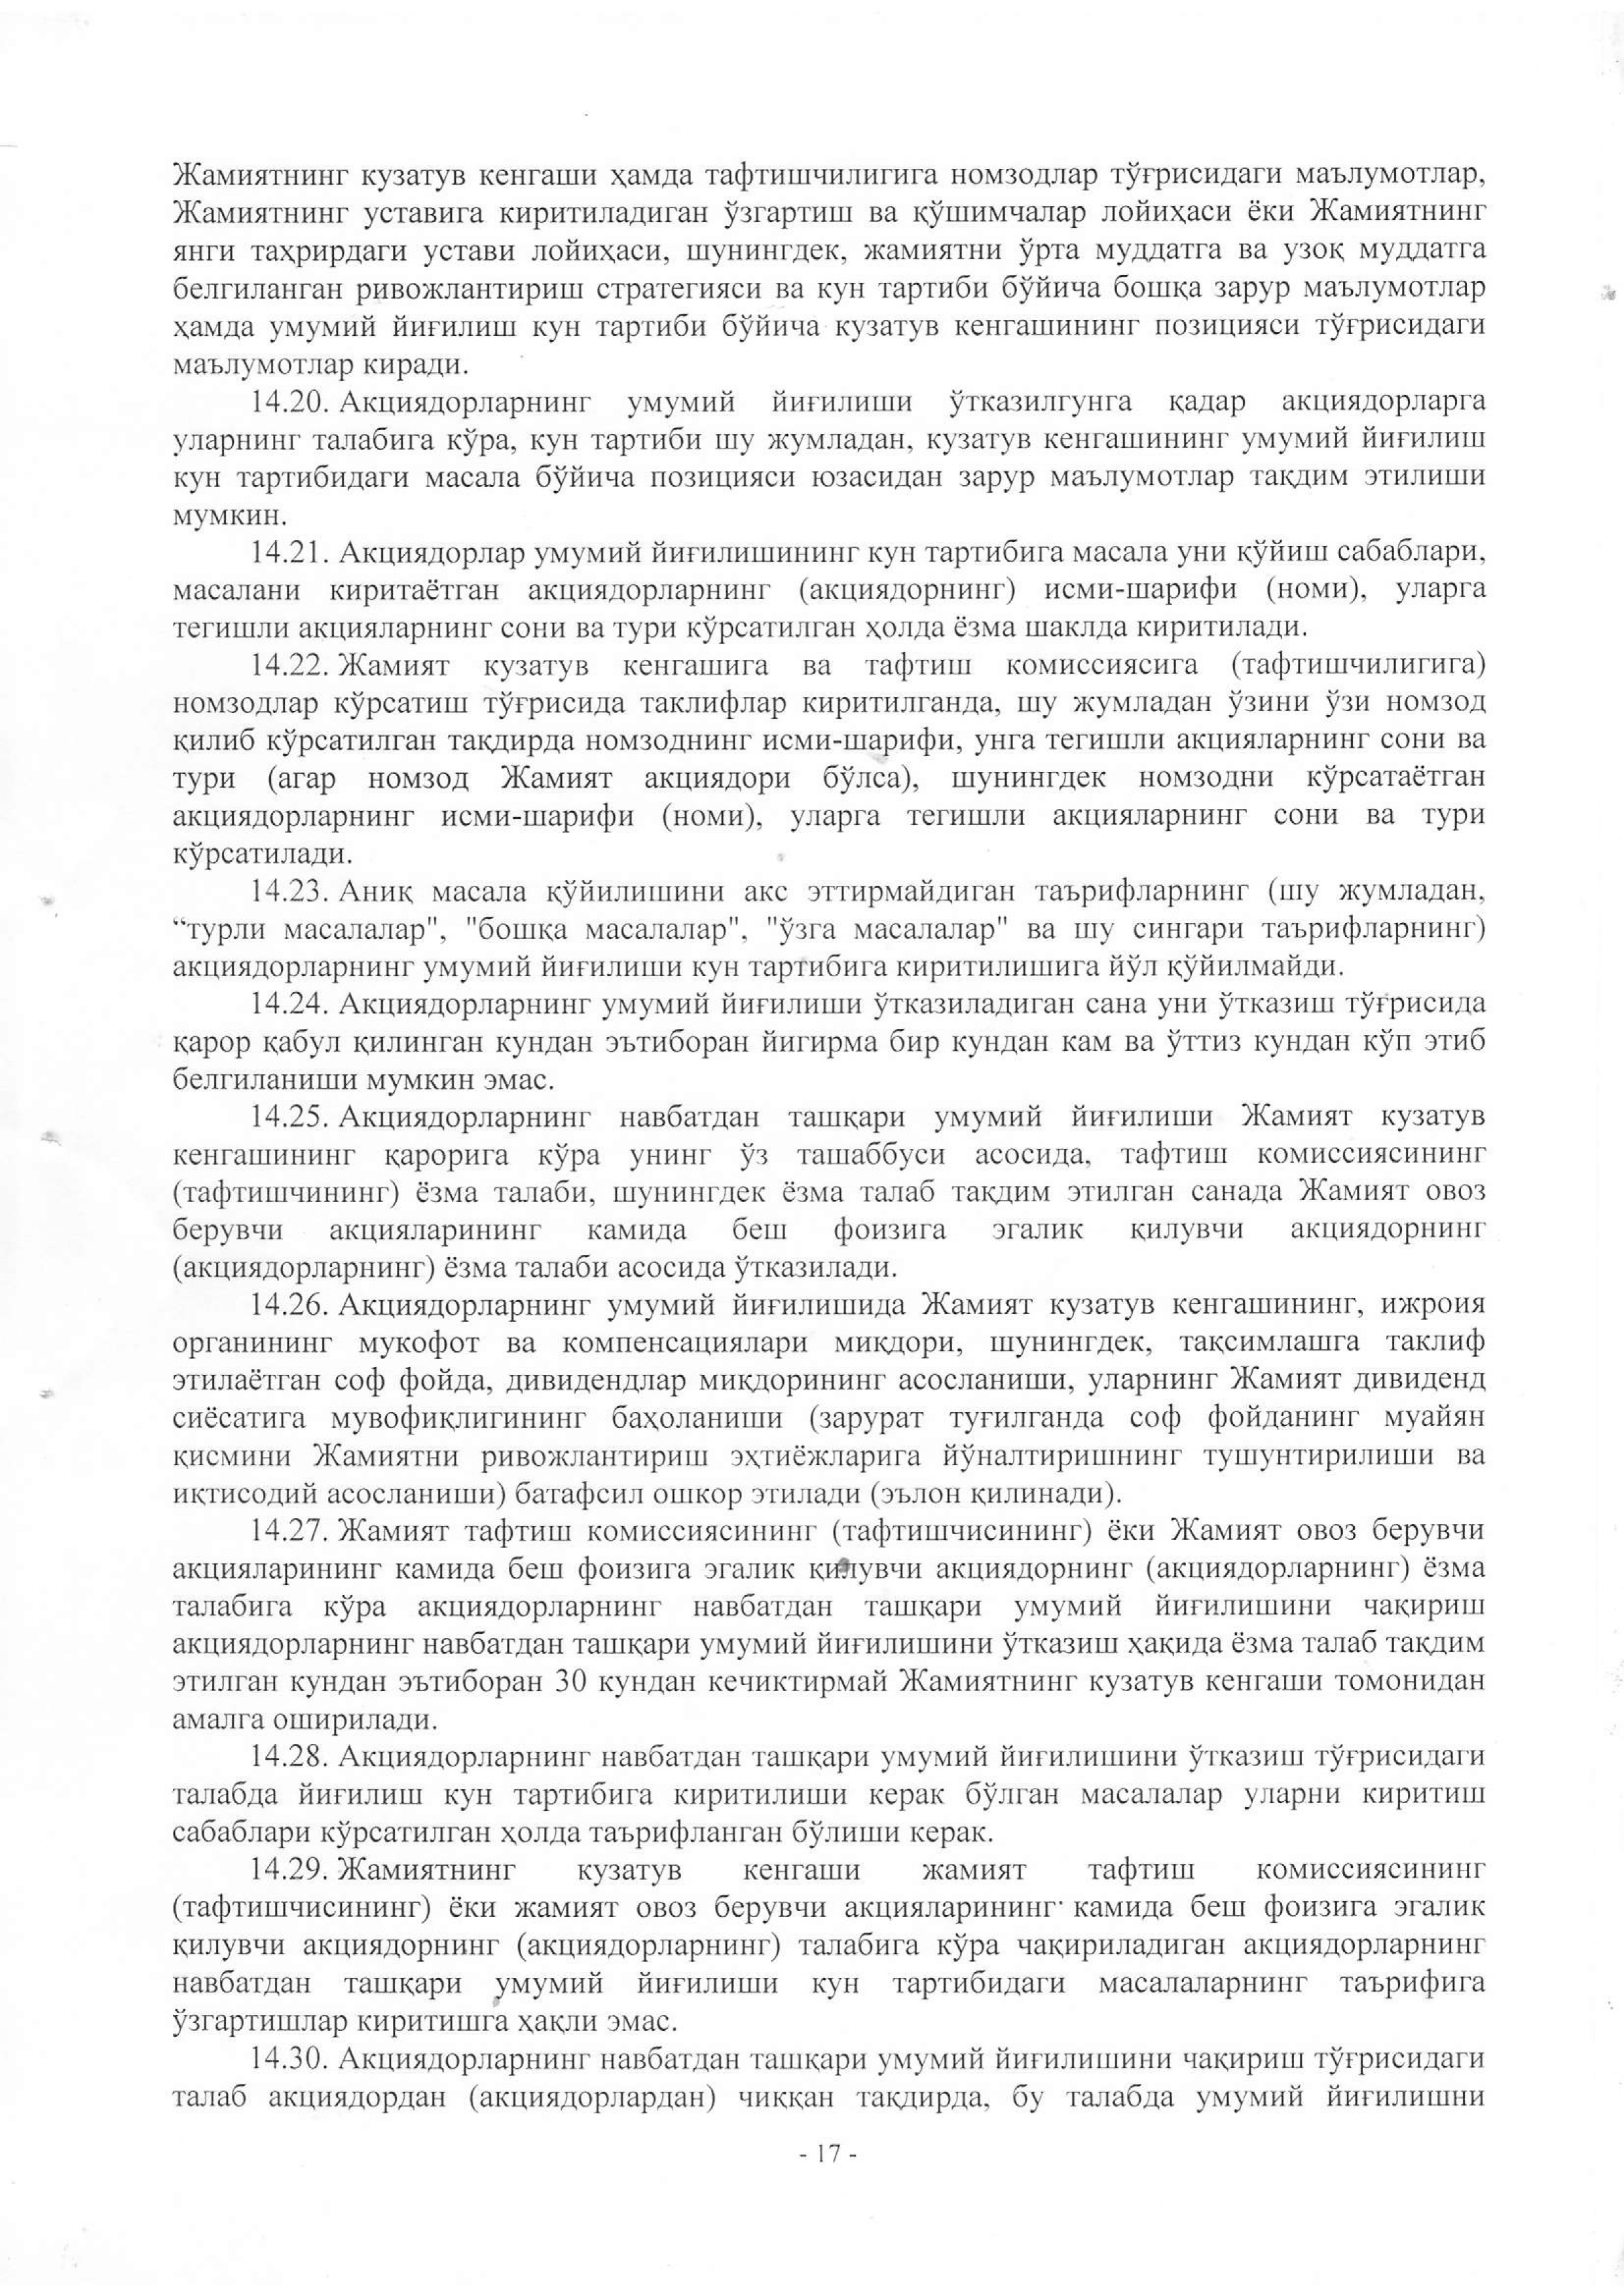 устав 2019 жахон бозори-17